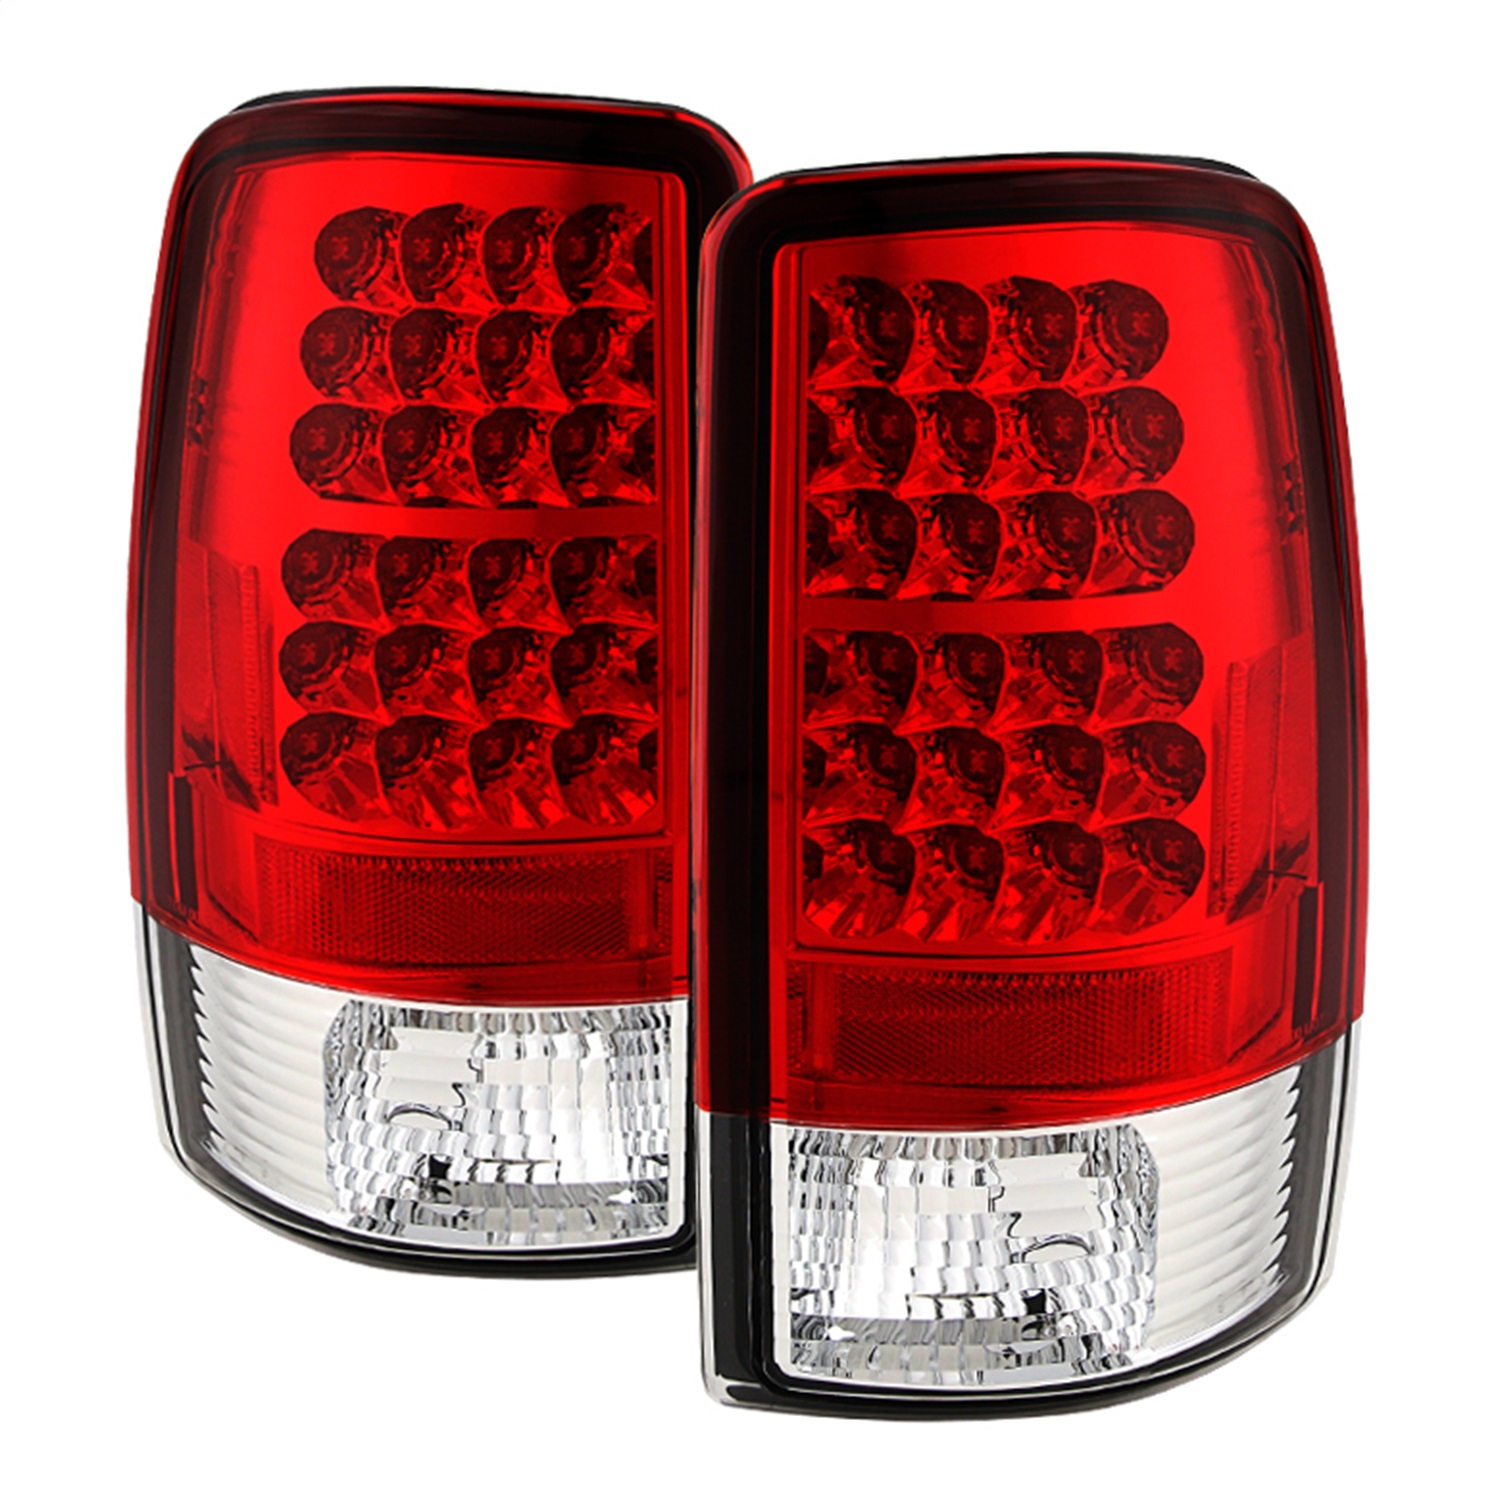 Spyder Auto 5001542 LED Tail Lights